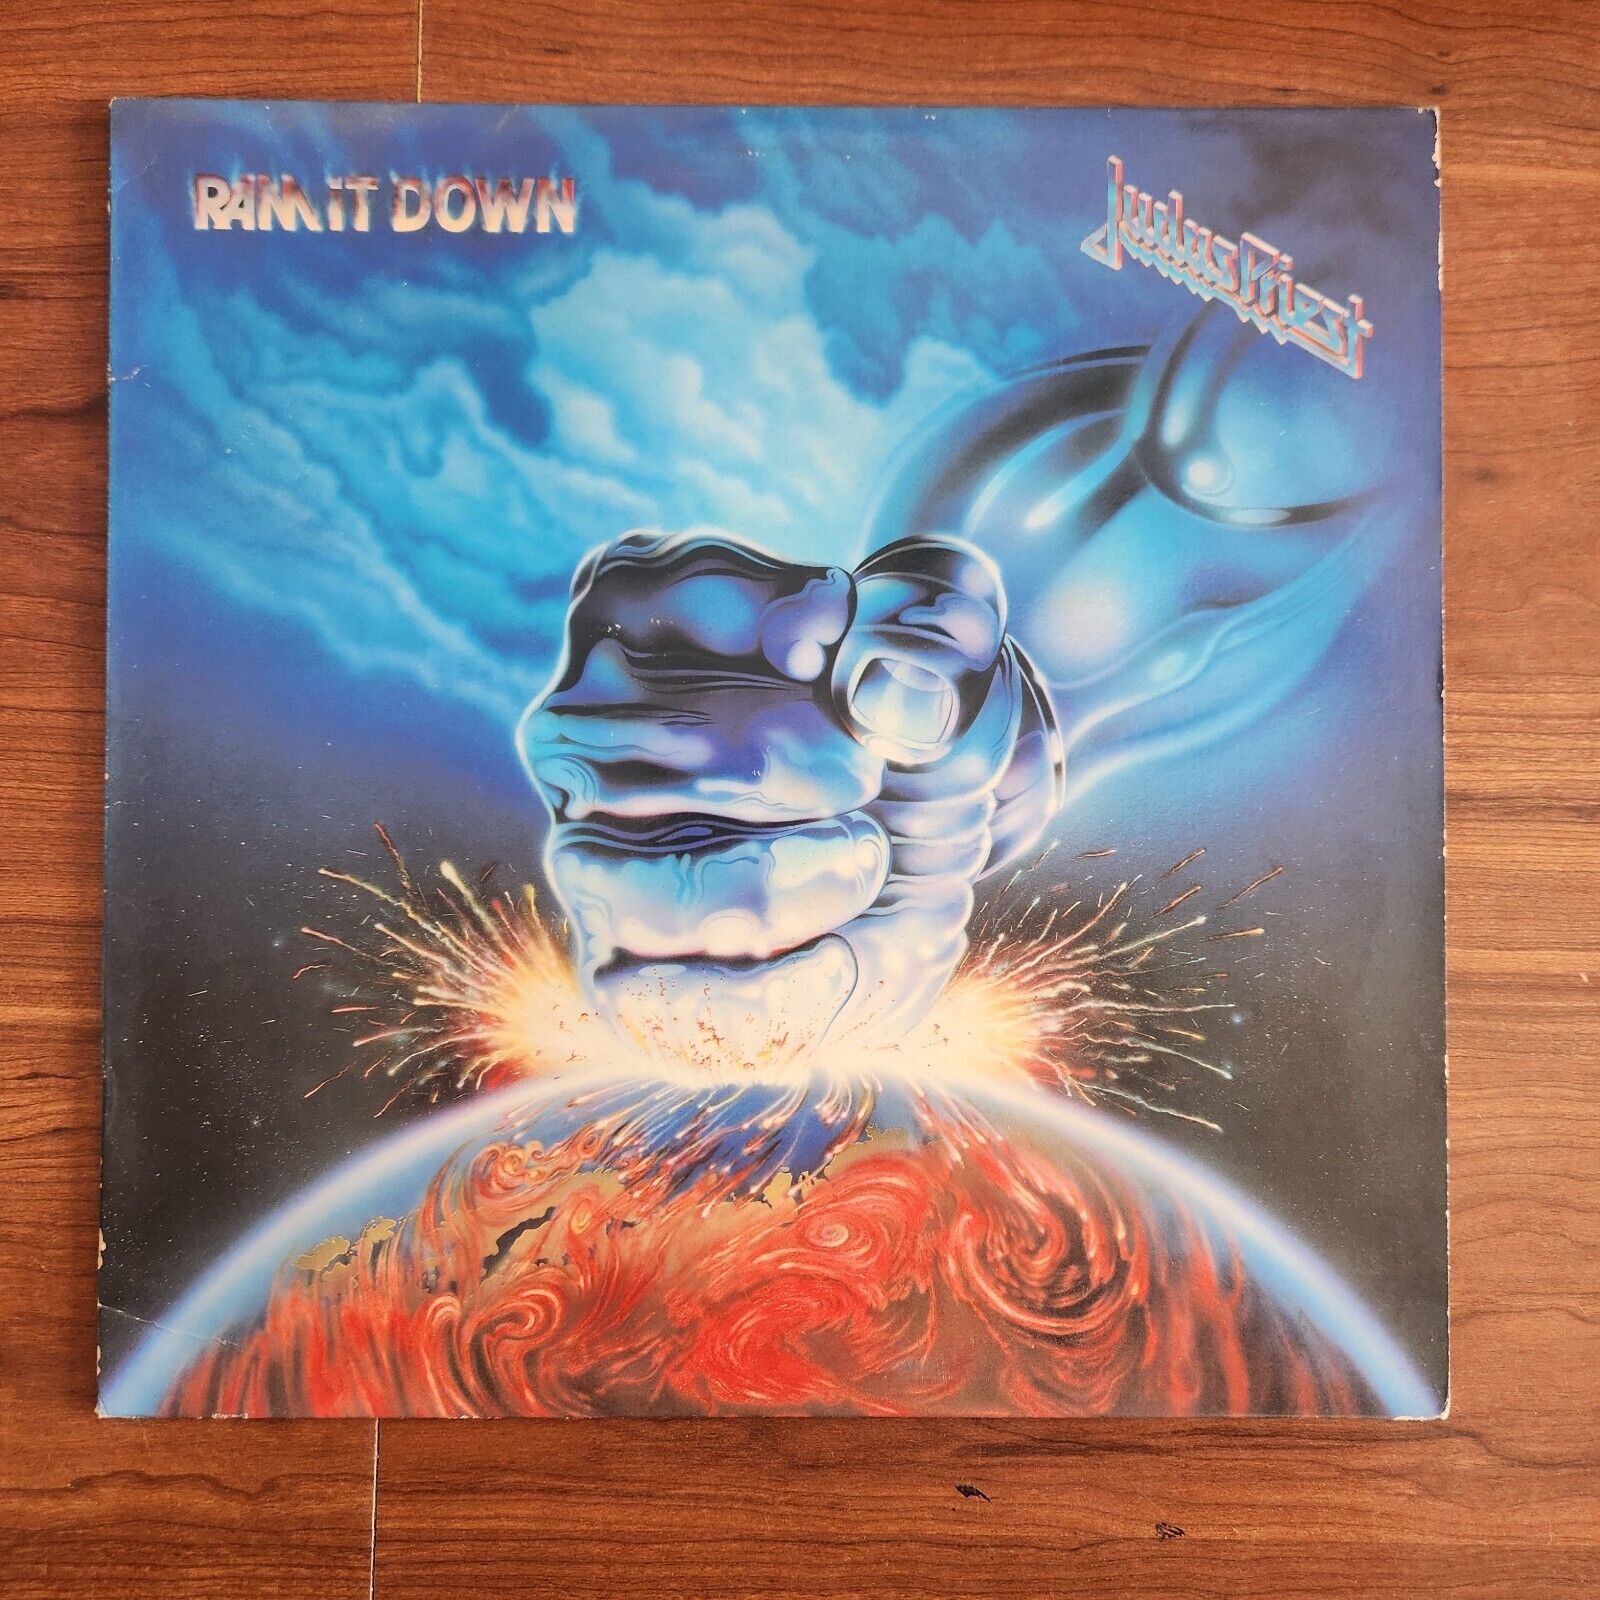 Judas Priest - Ram It Down Vintage Original Vinyl - Columbia Records 